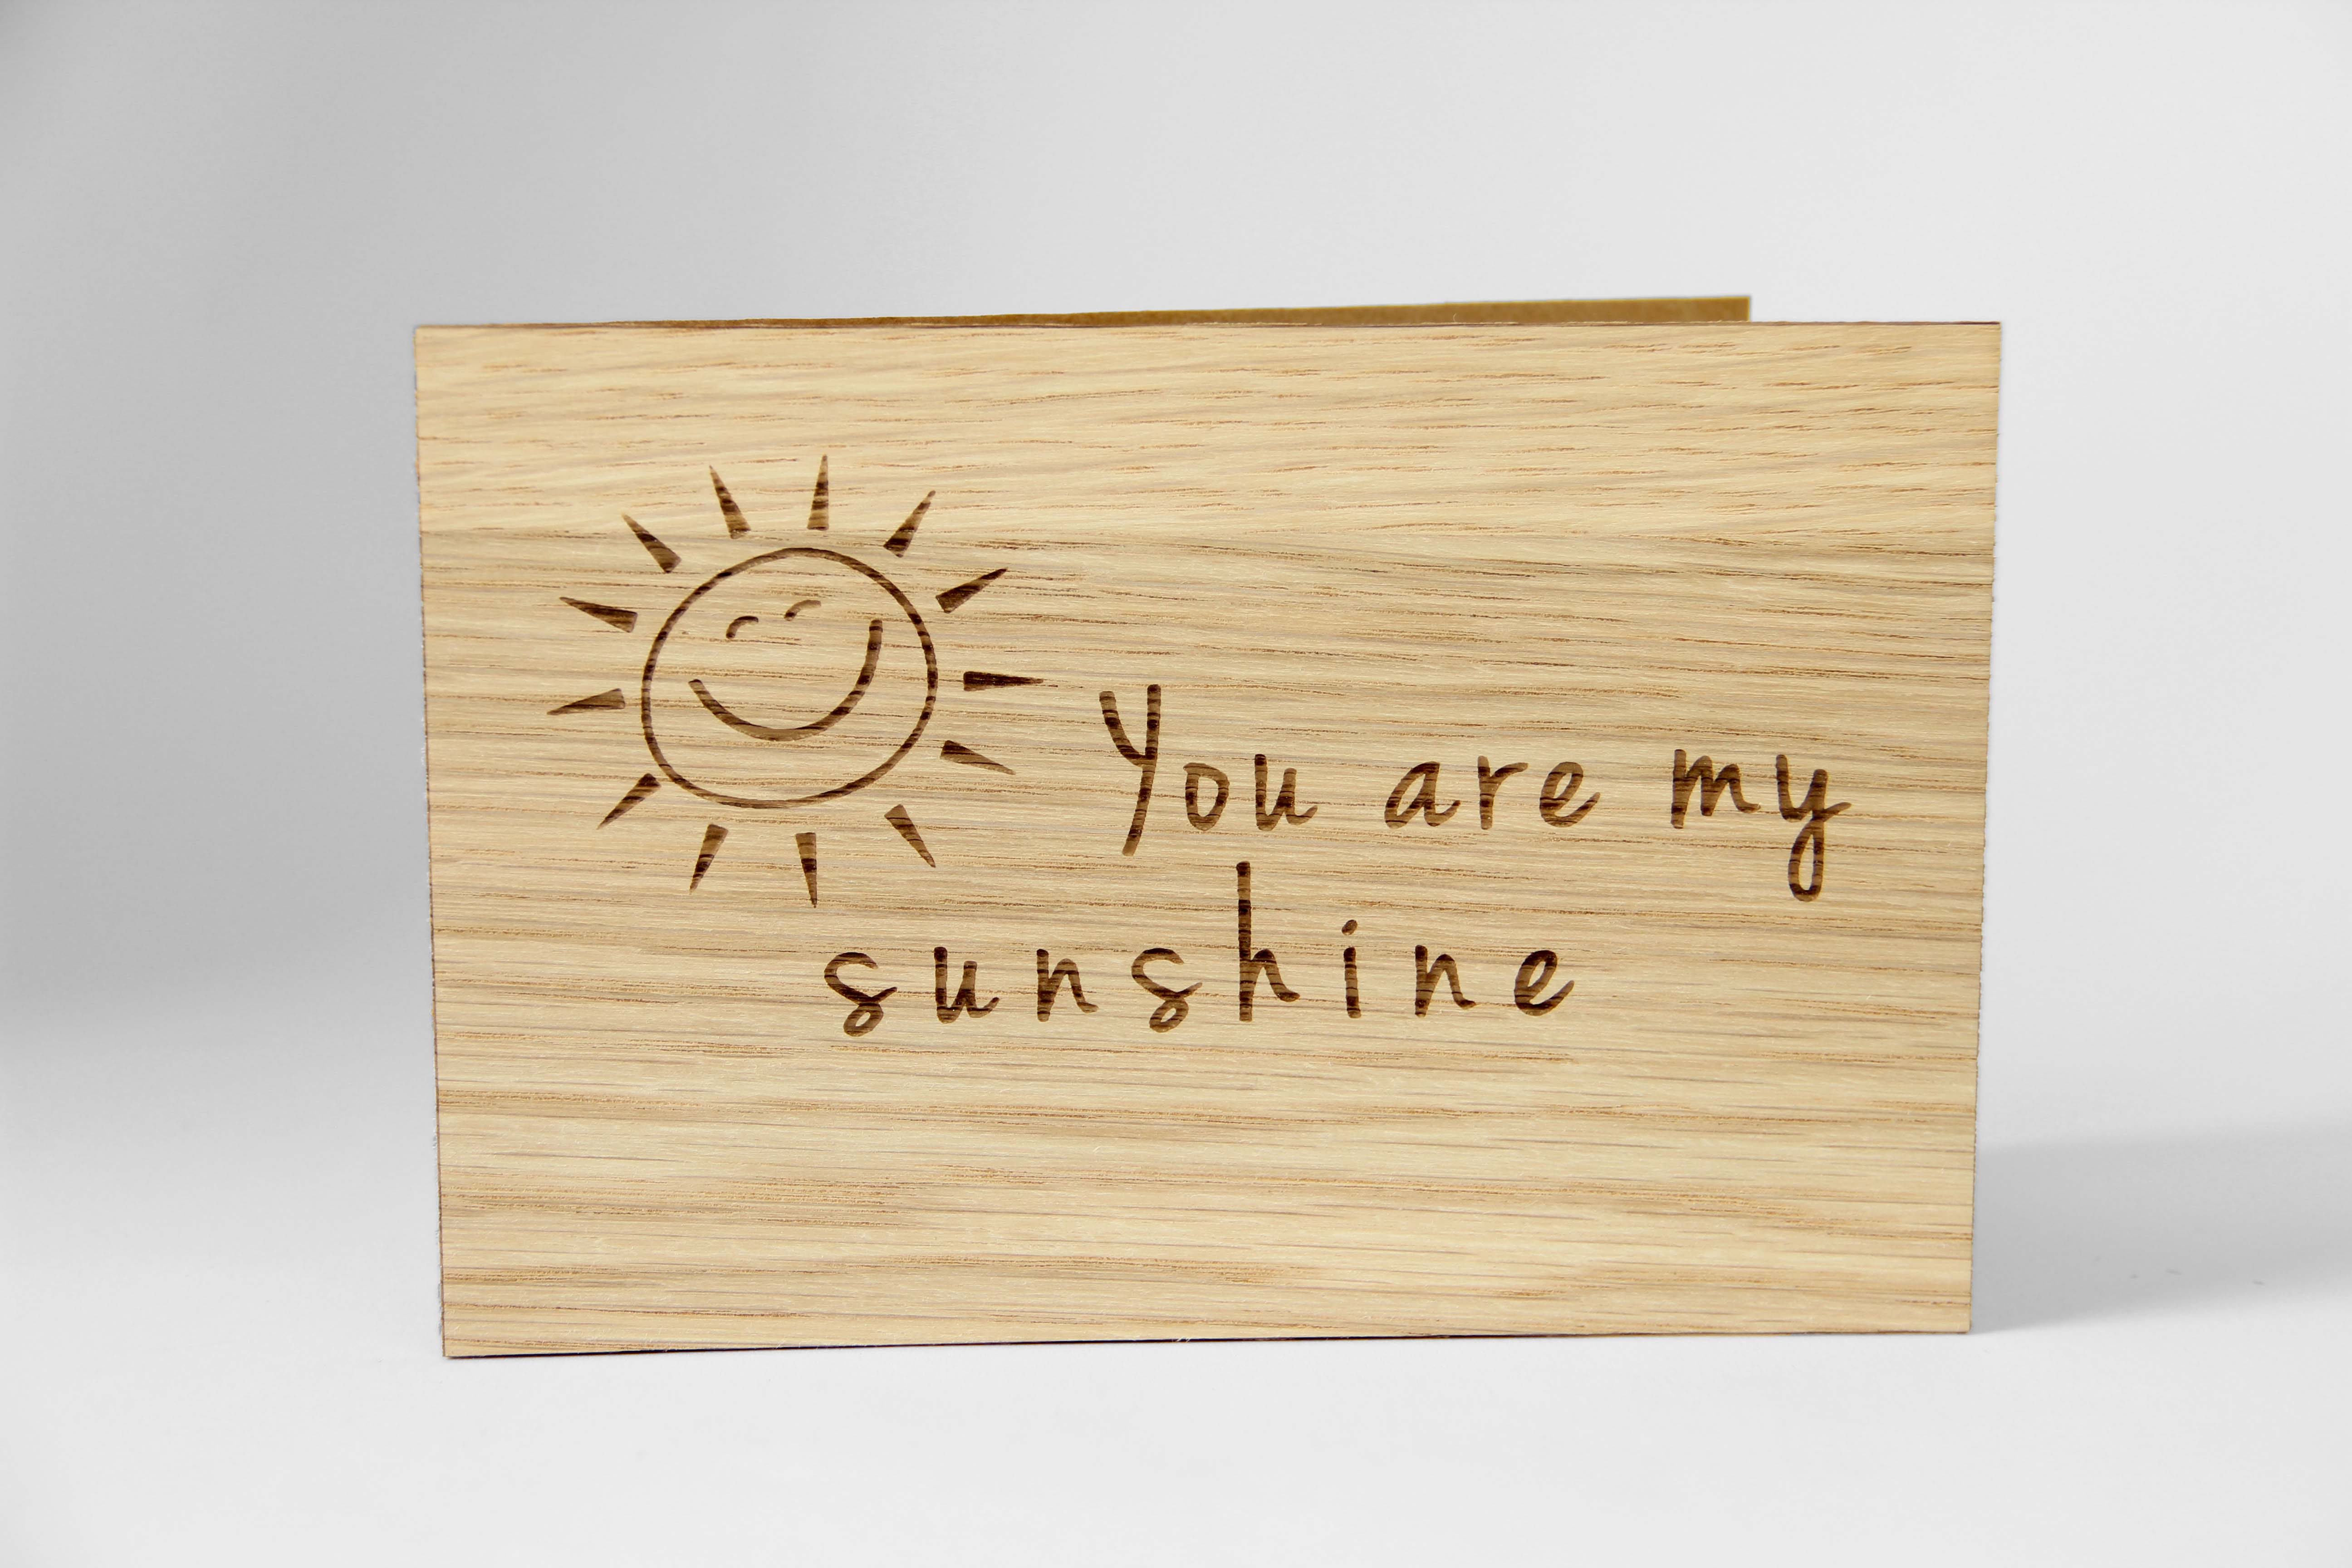 Holzgrusskarten - Geschenkkarte "You are my sunshine" aus Eiche, lächelnde Sonne